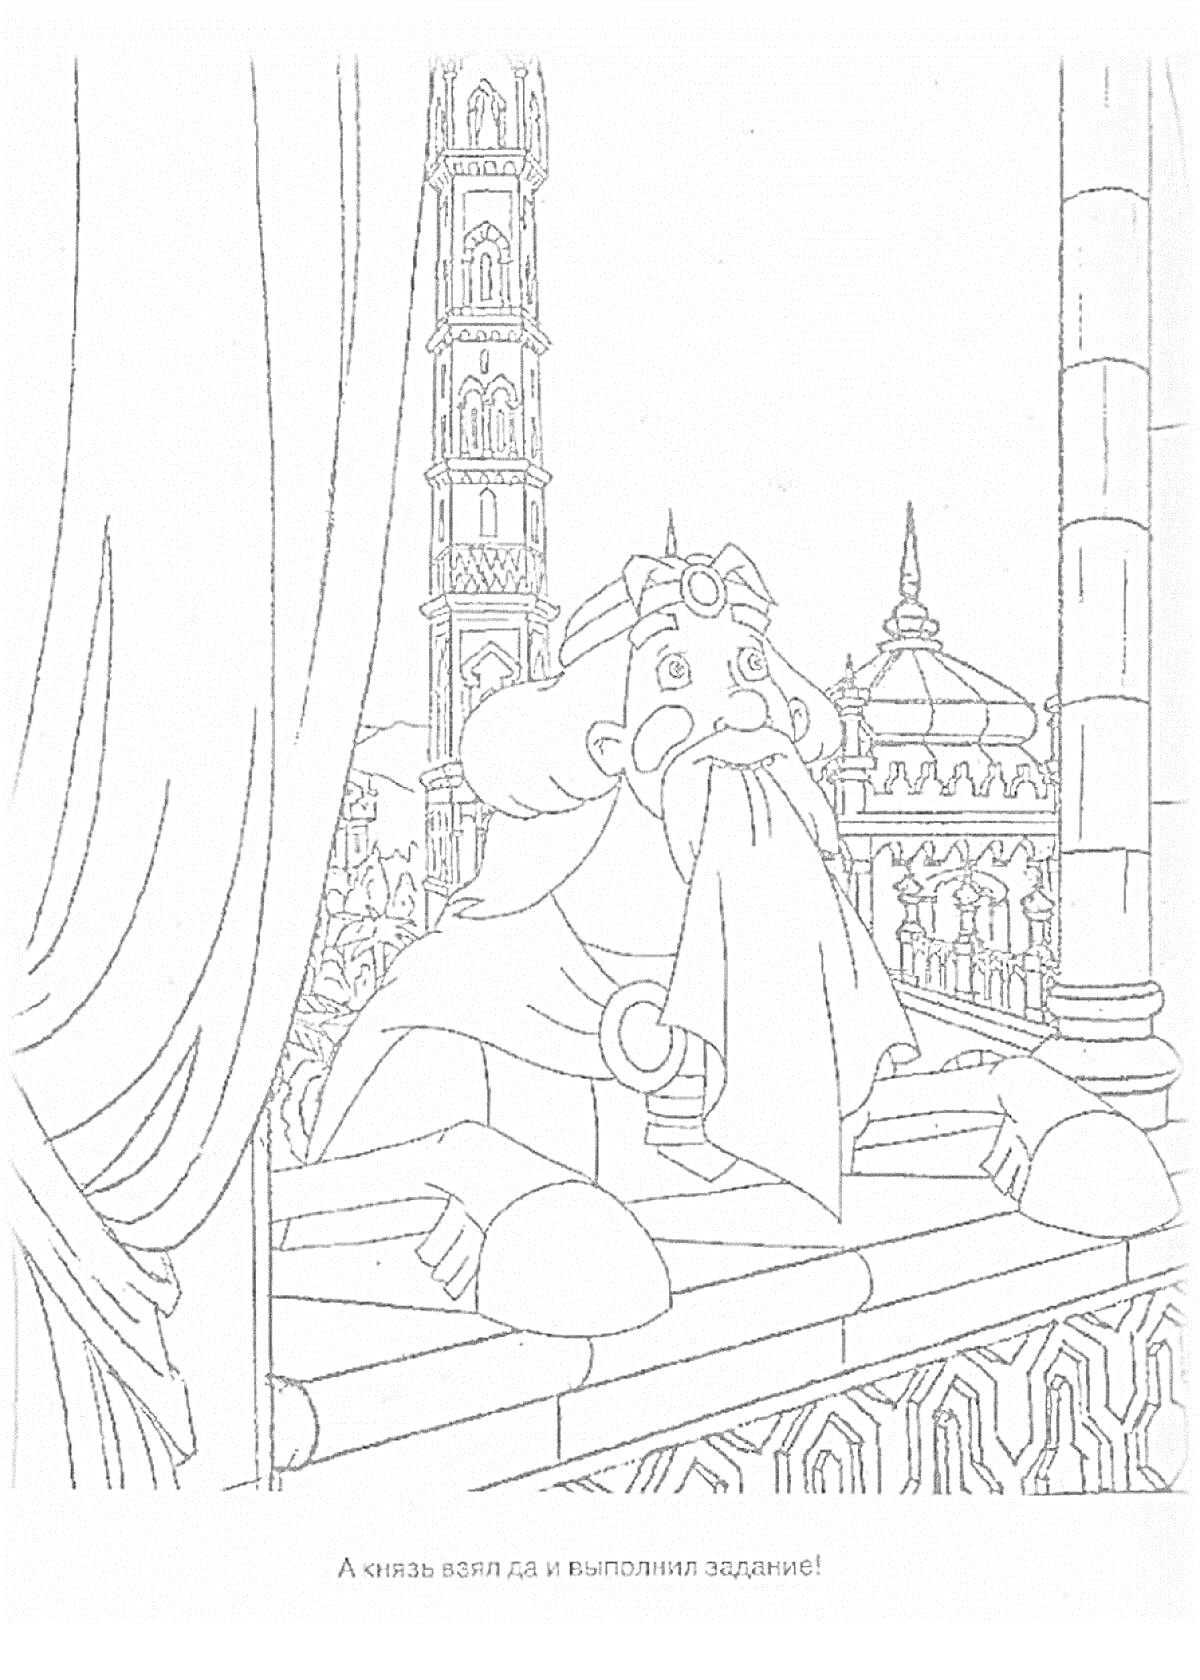 Богатырь с бородой на балконе с видом на высокую башню и купол здания